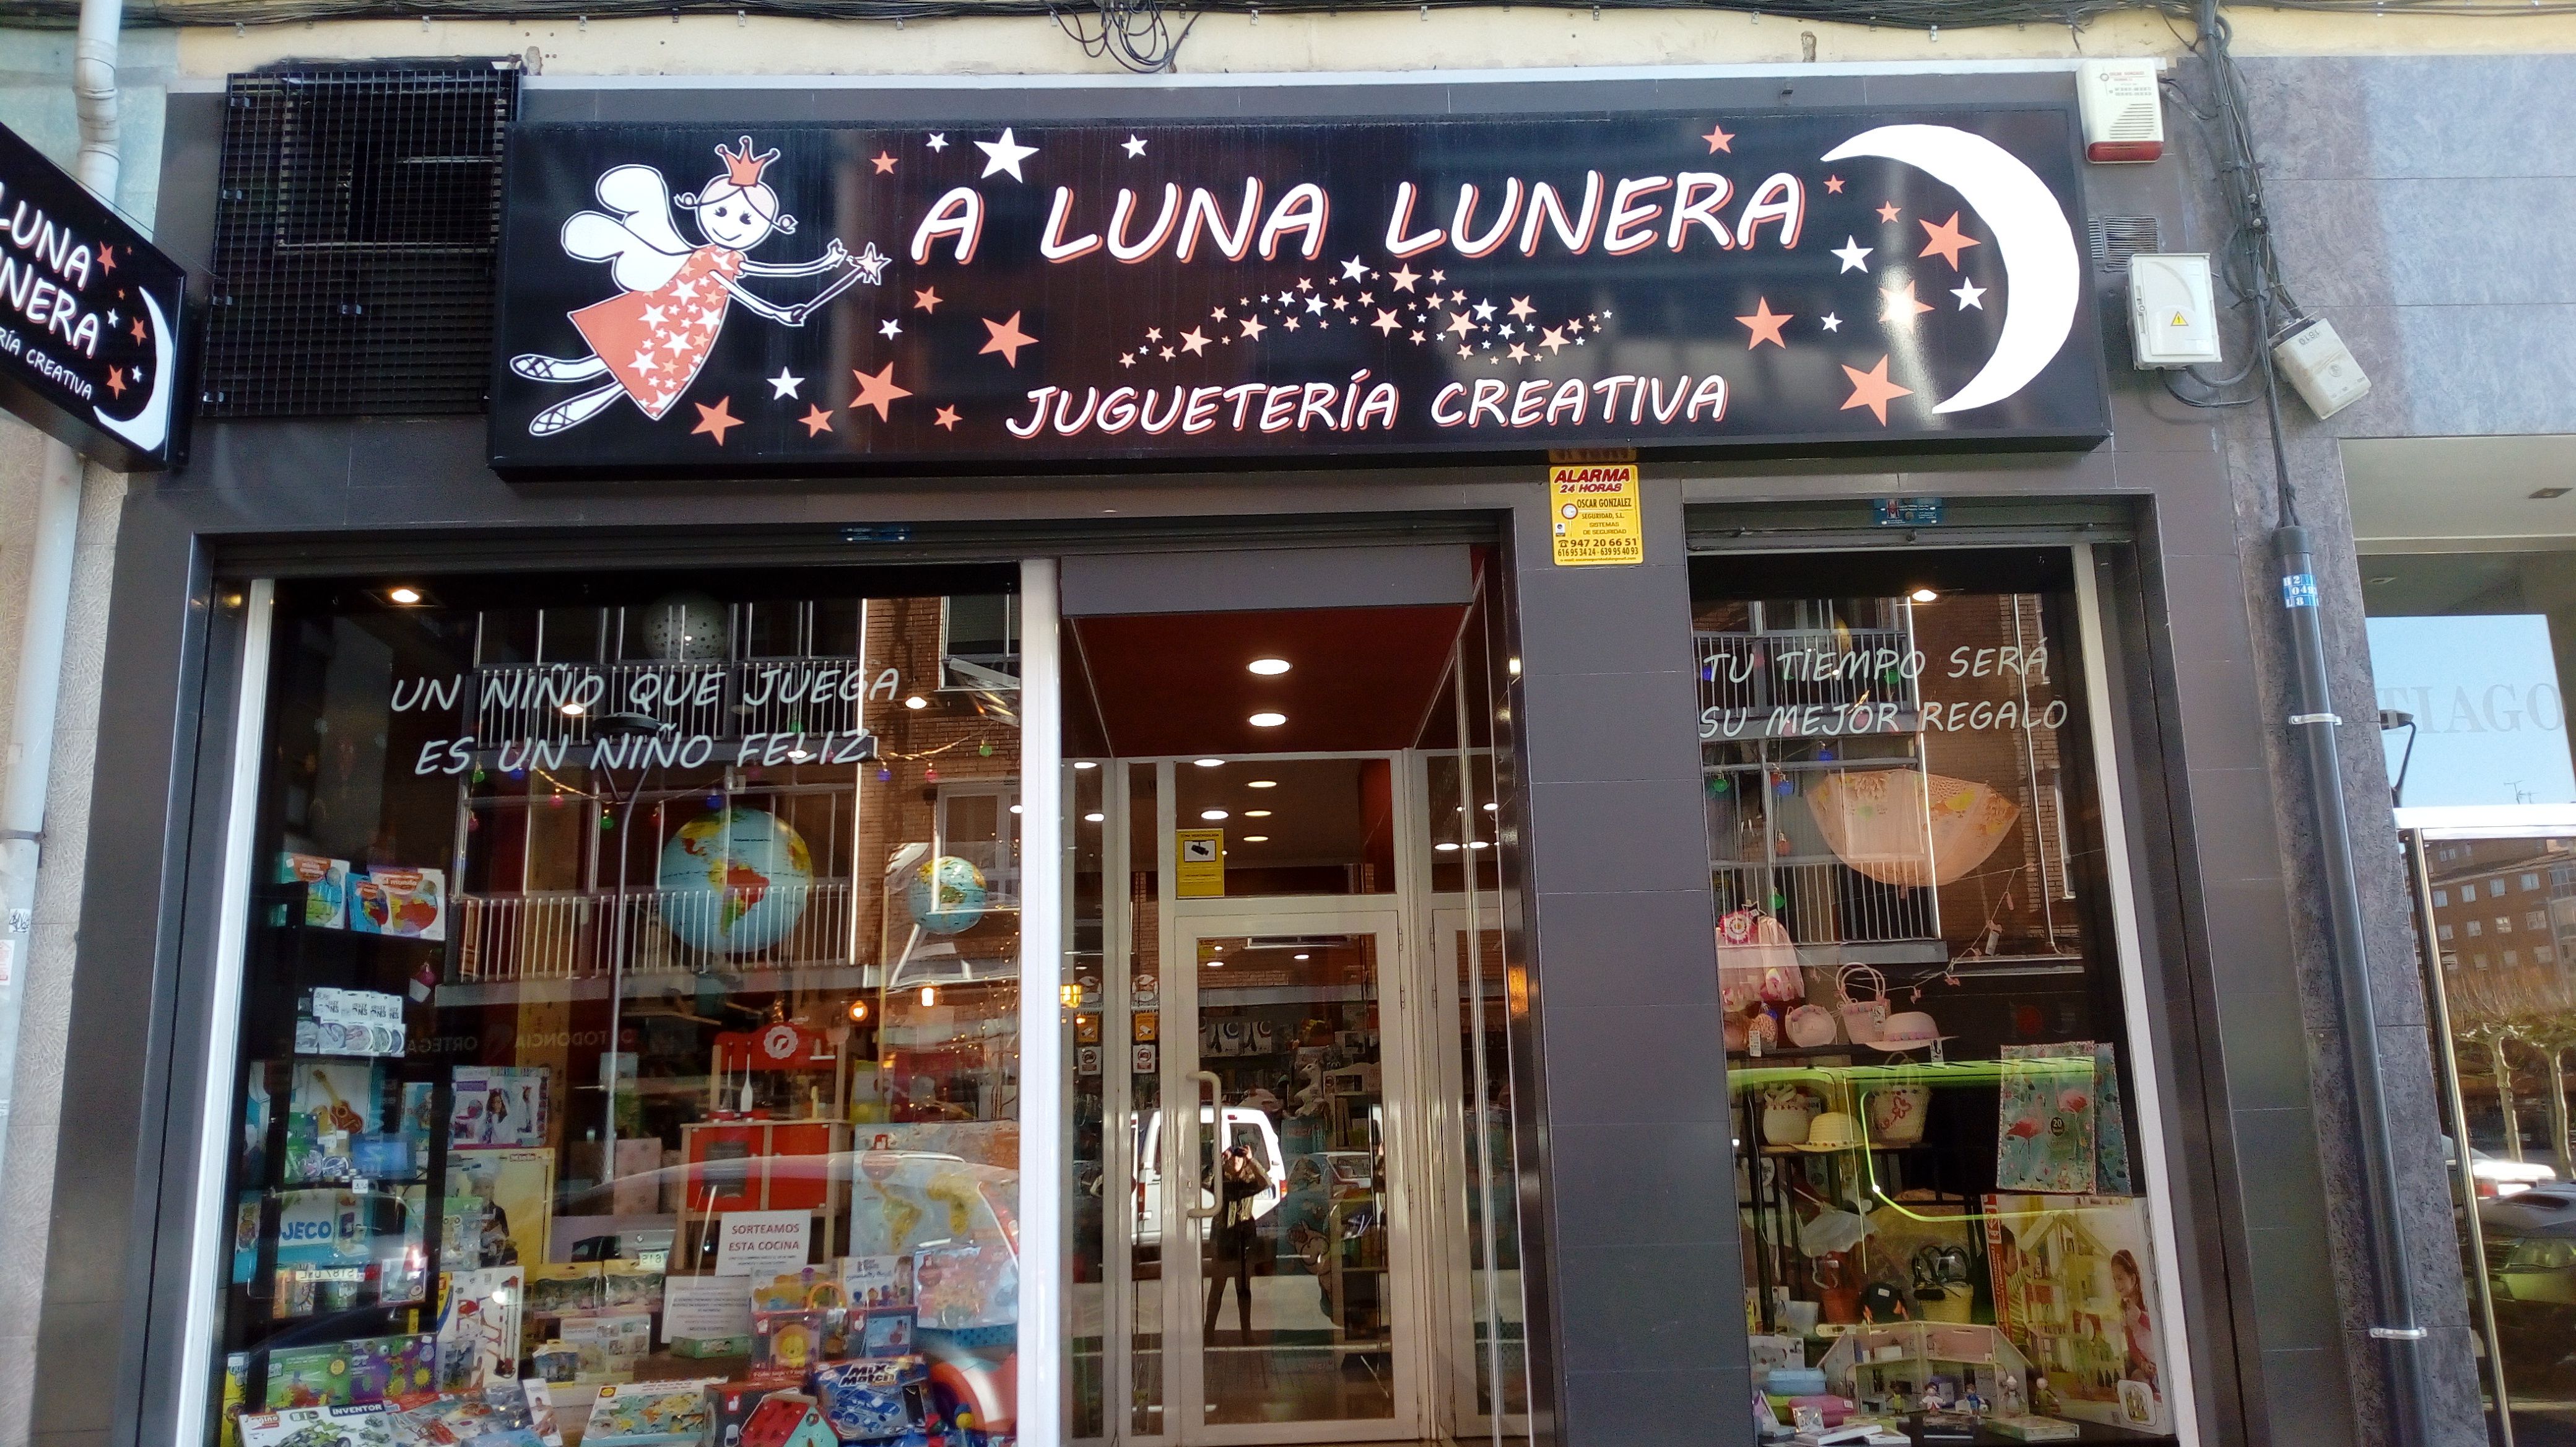 A Luna Lunera